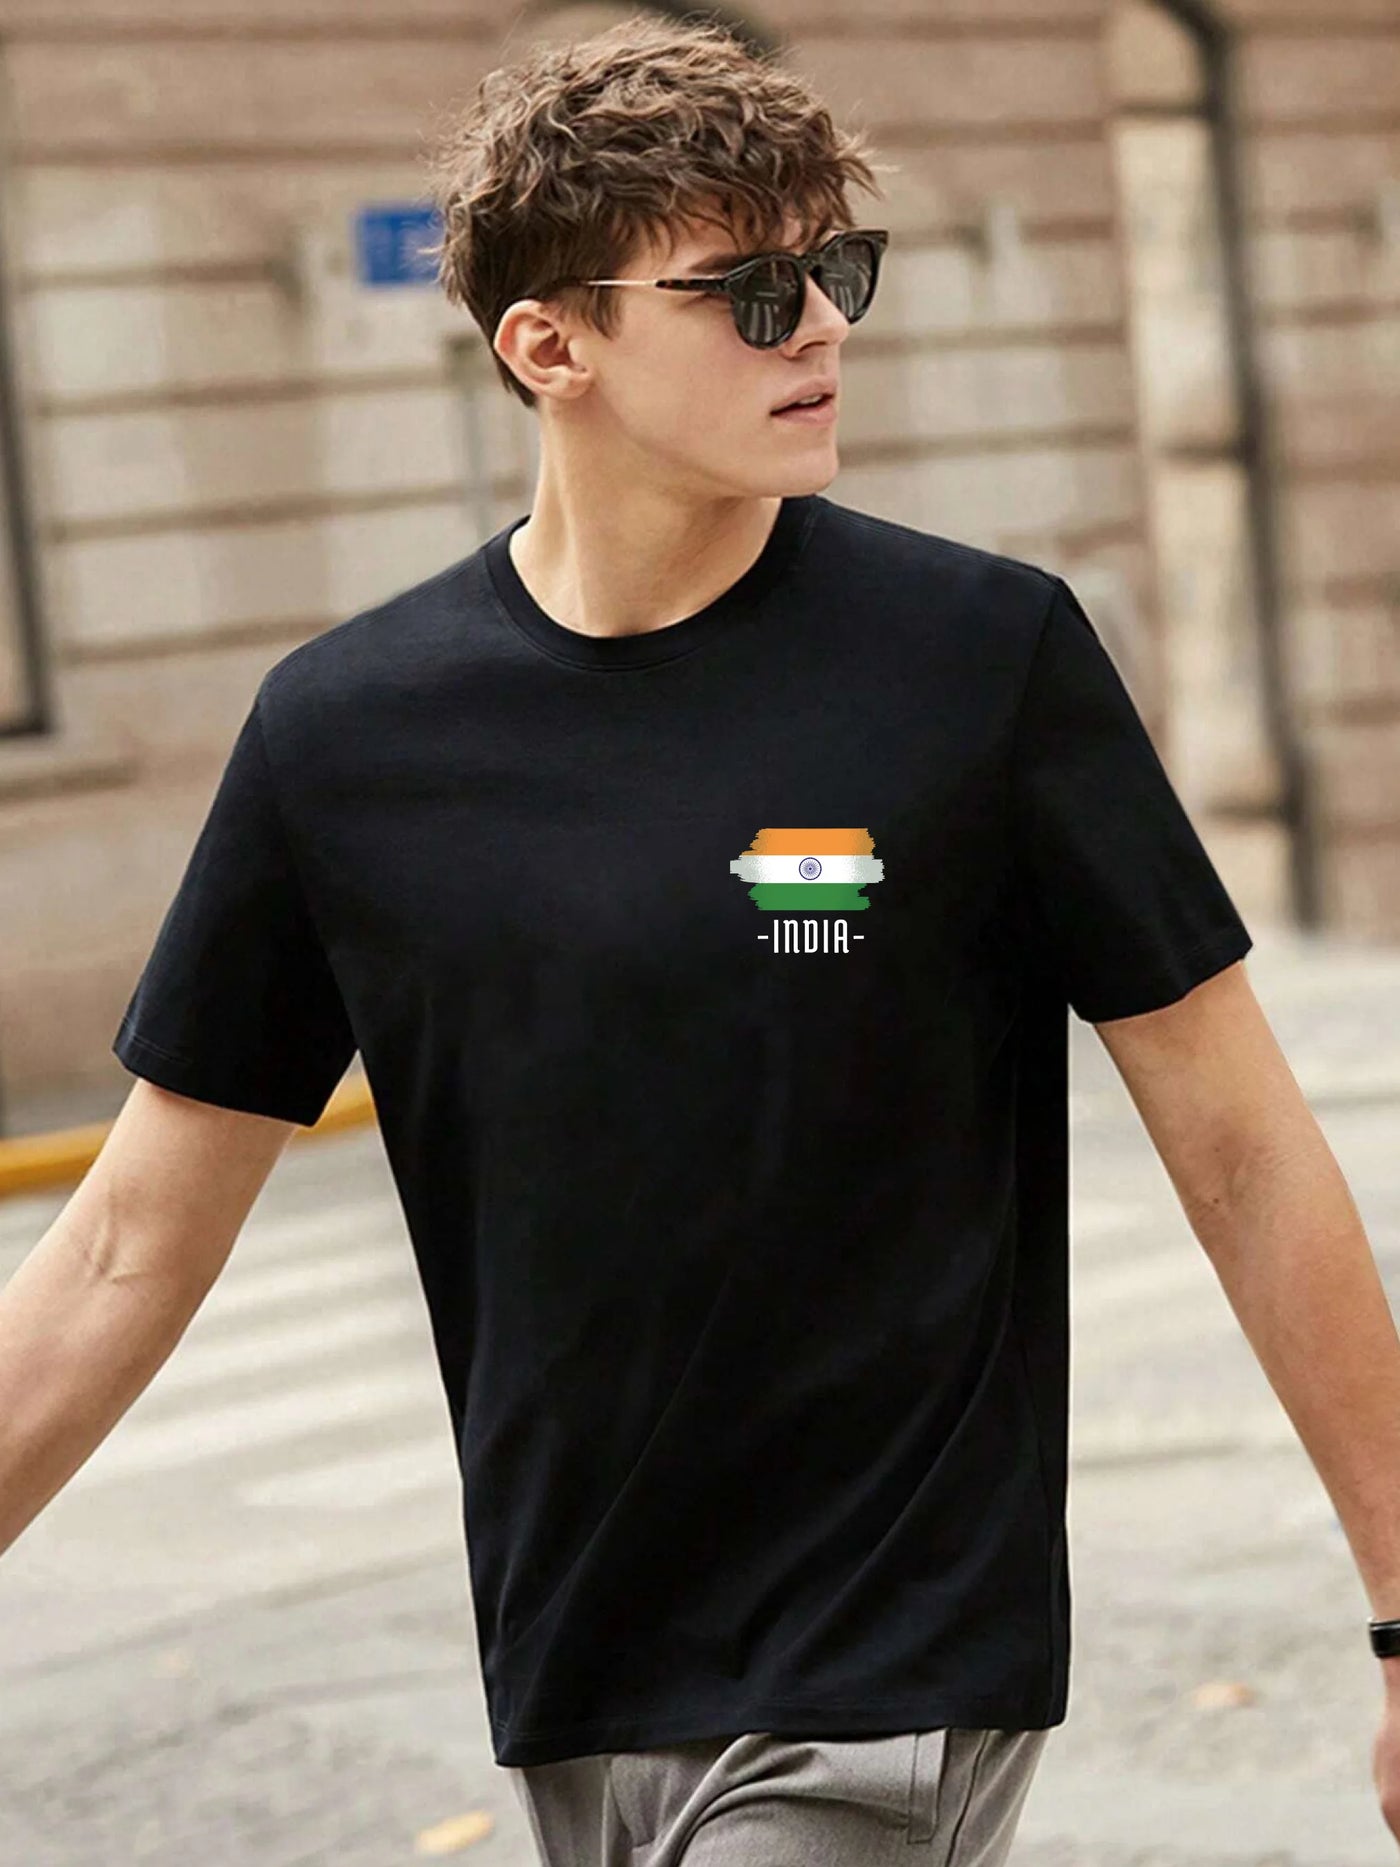 India - 100% Cotton Premium T-Shirt